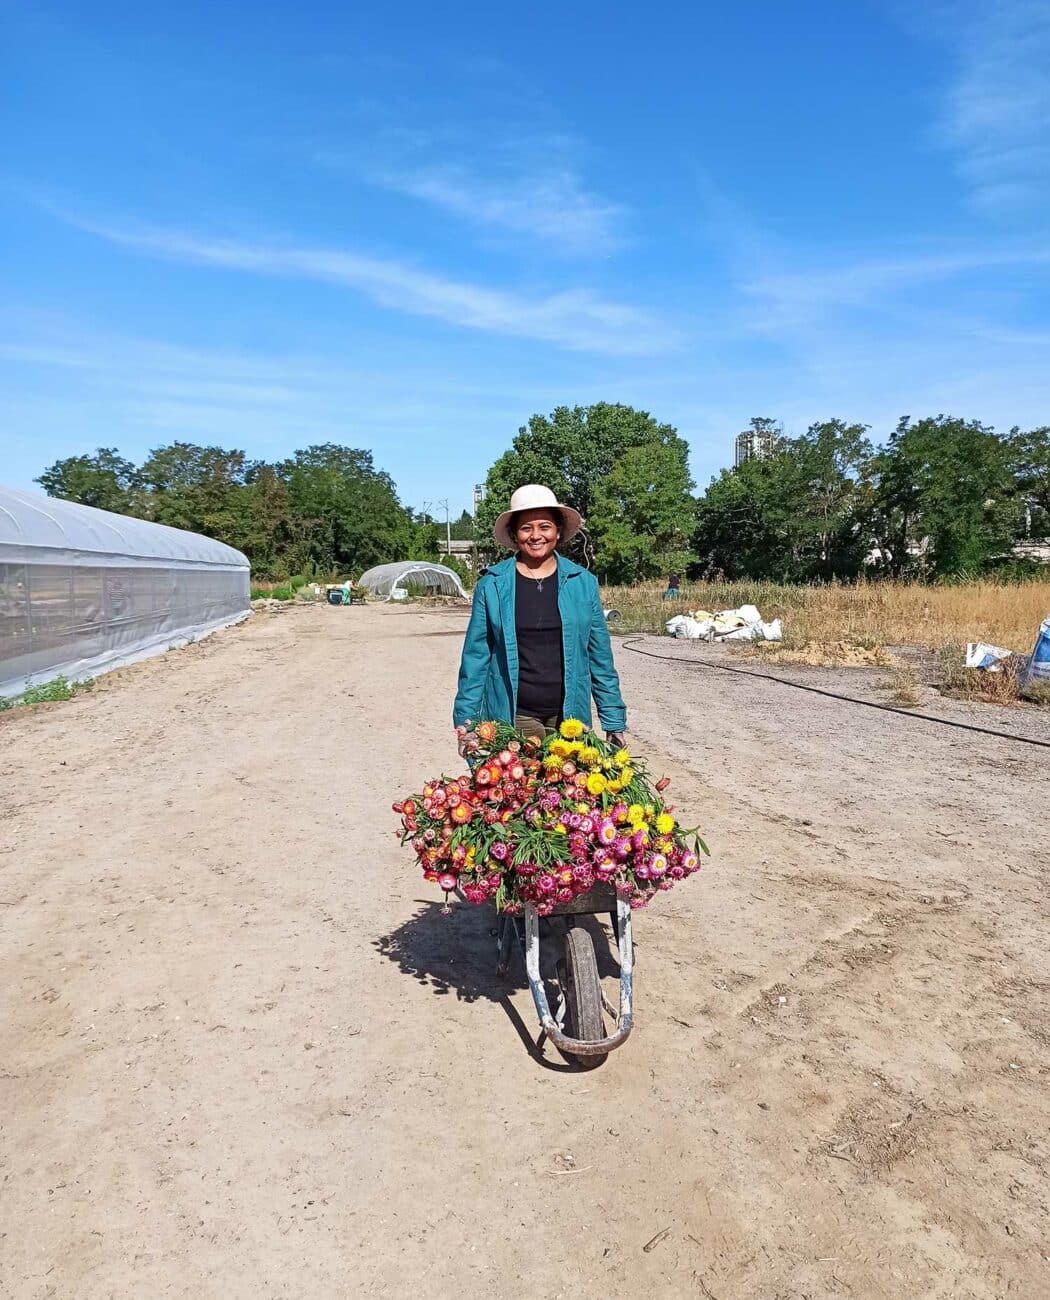 Halage fondation paris habitat brouette fleurs